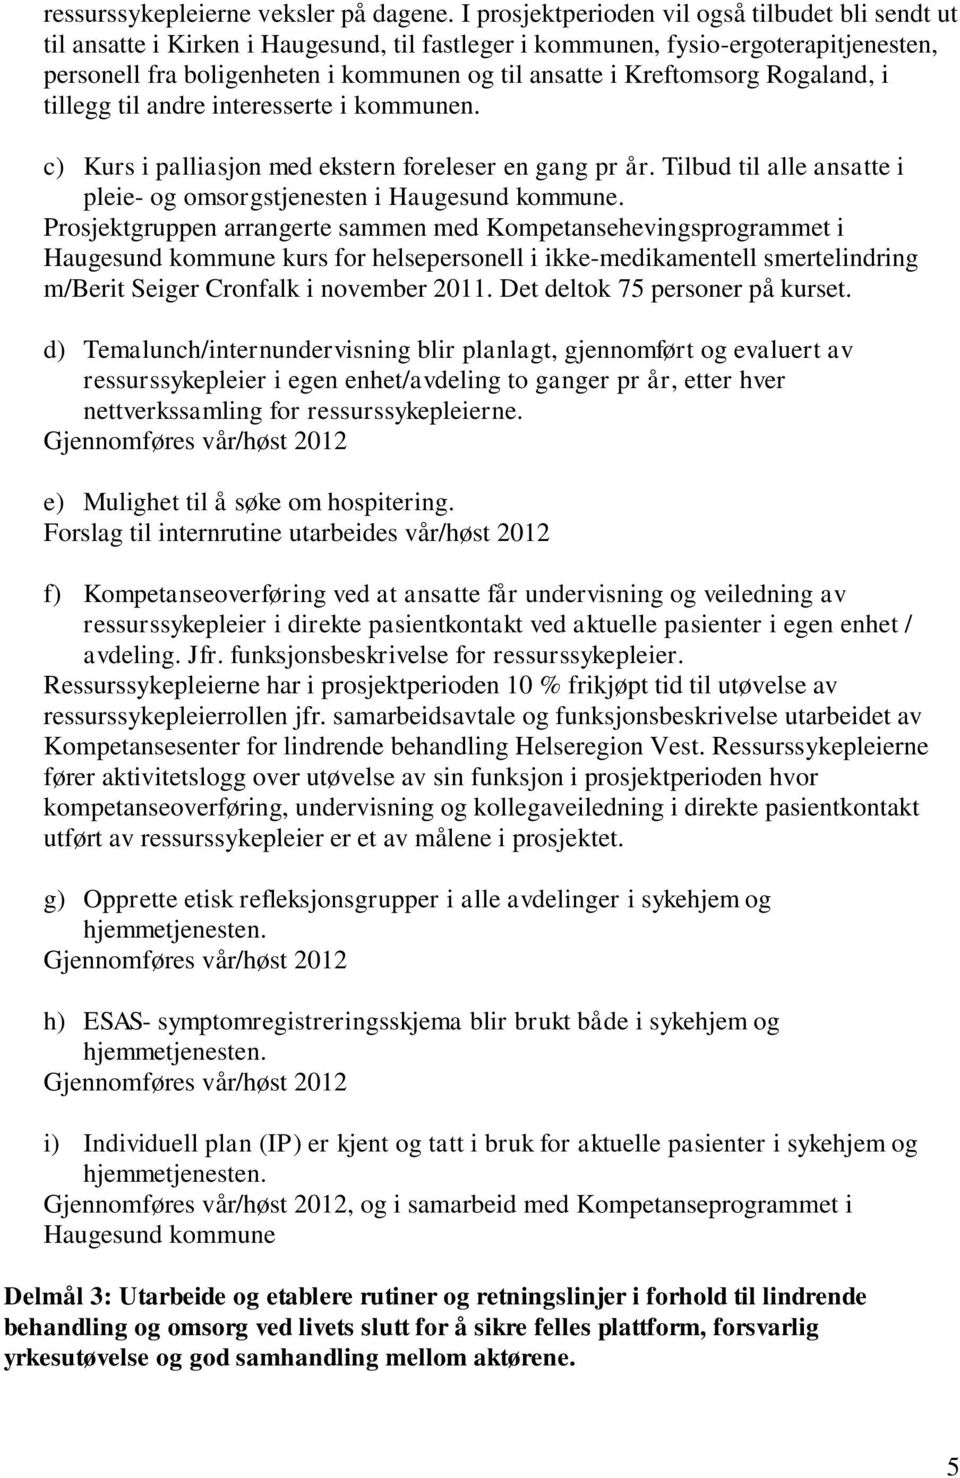 Kreftomsorg Rogaland, i tillegg til andre interesserte i kommunen. c) Kurs i palliasjon med ekstern foreleser en gang pr år. Tilbud til alle ansatte i pleie- og omsorgstjenesten i Haugesund kommune.